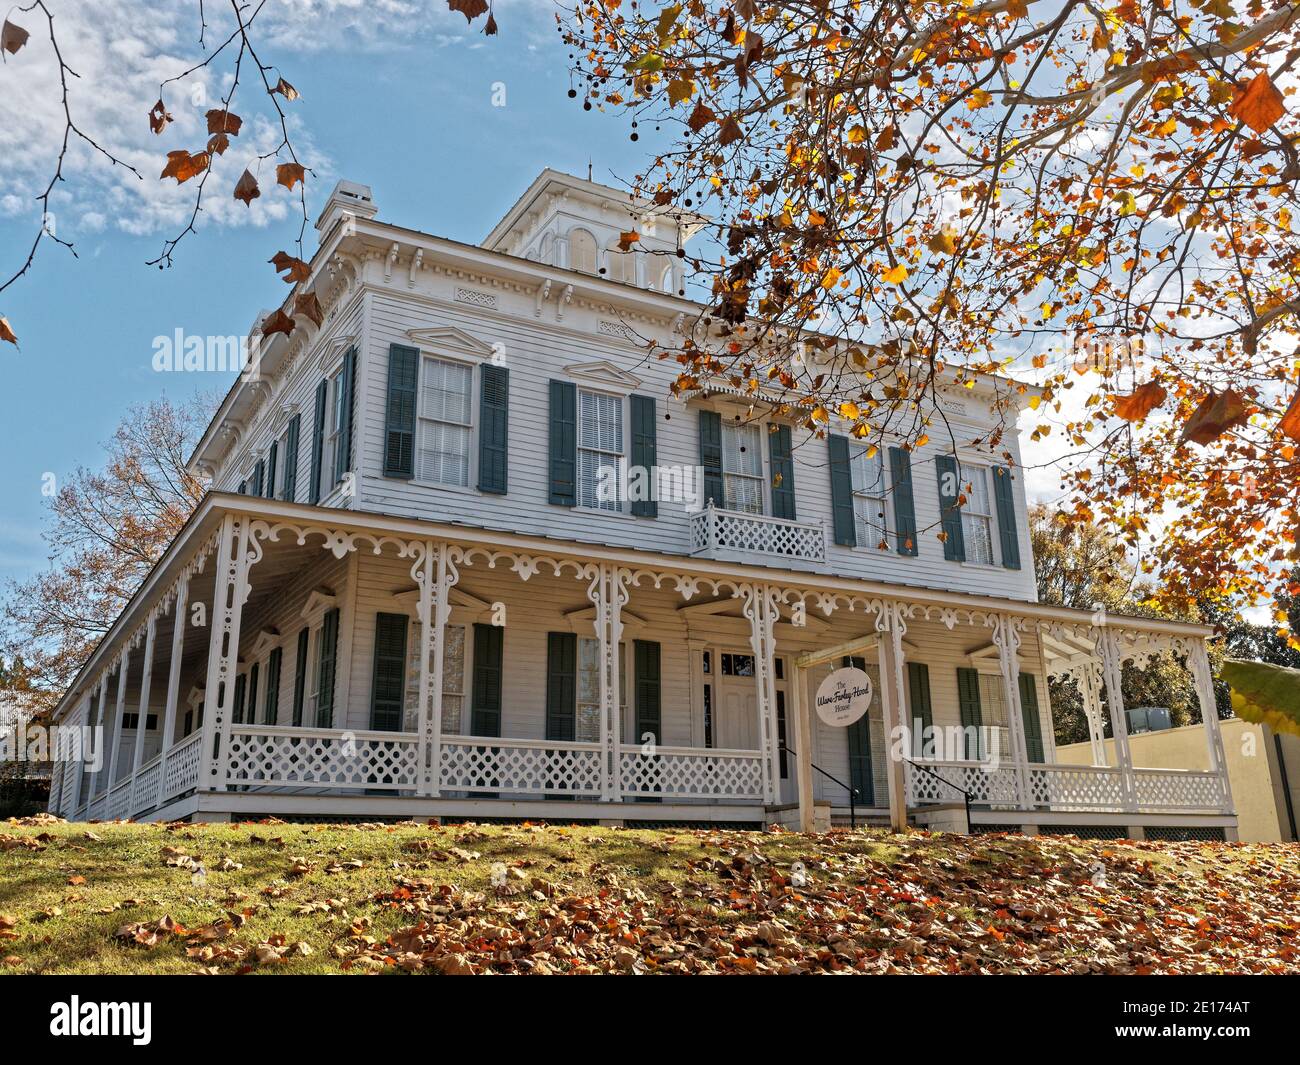 Ware - Farley - Hood House erbaut im Jahre 1850 Italianate Stil Architektur Event Center in Montgomery Alabama, USA. Stockfoto